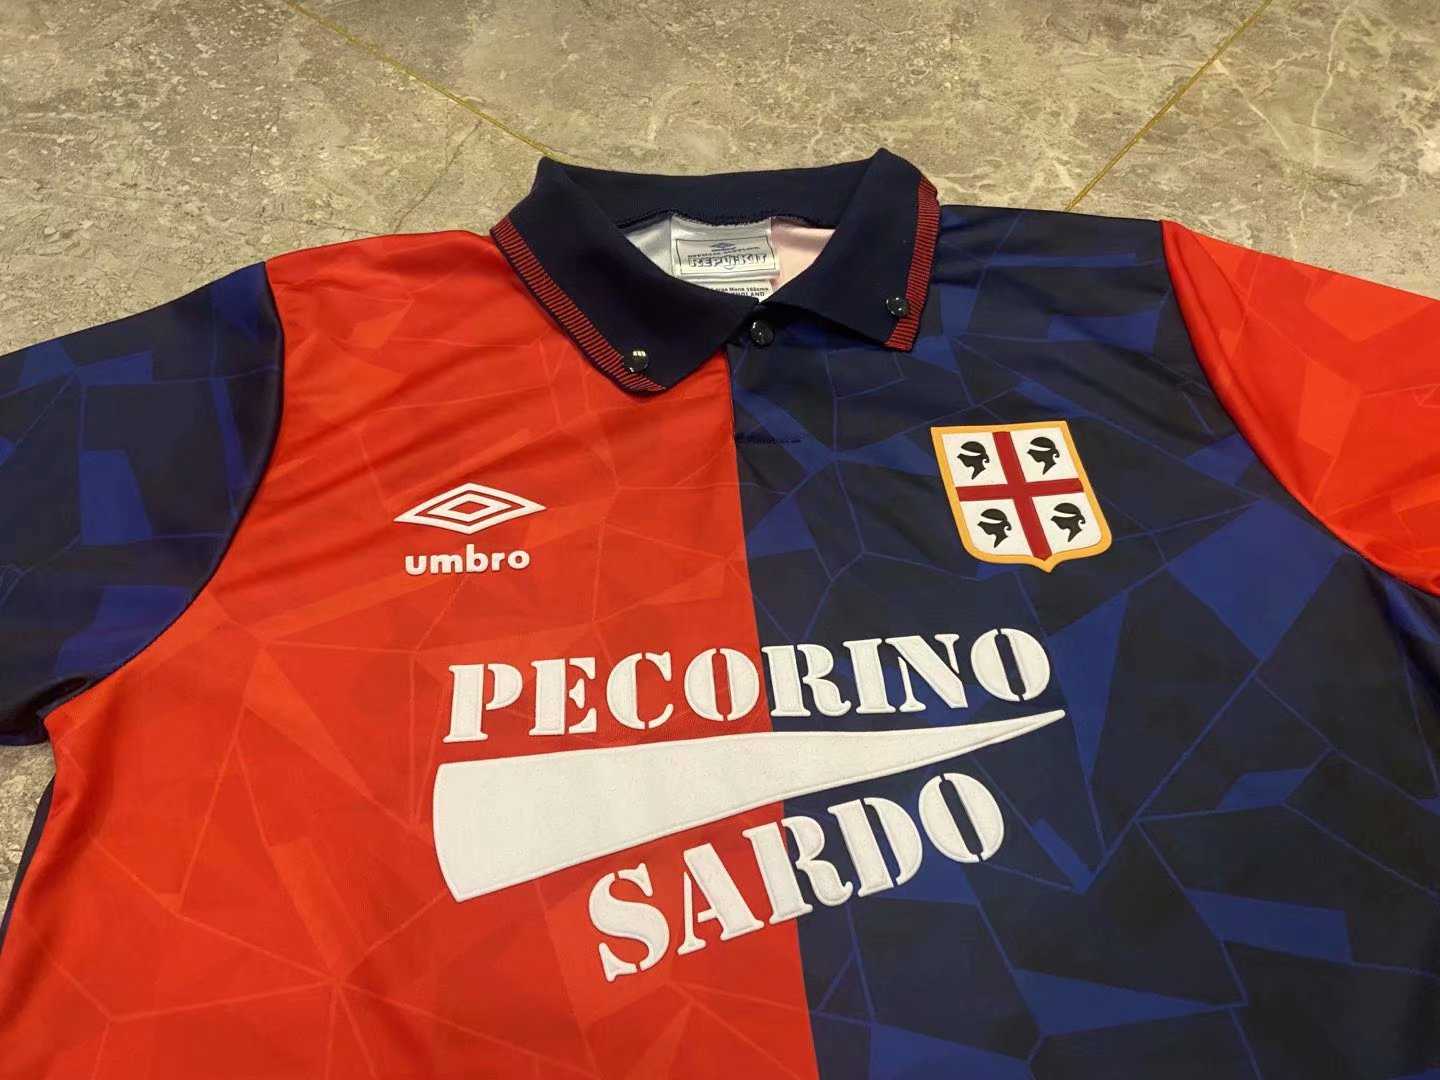 1991/92 Cagliari Calcio Retro Home Men's Football Jersey Shirts